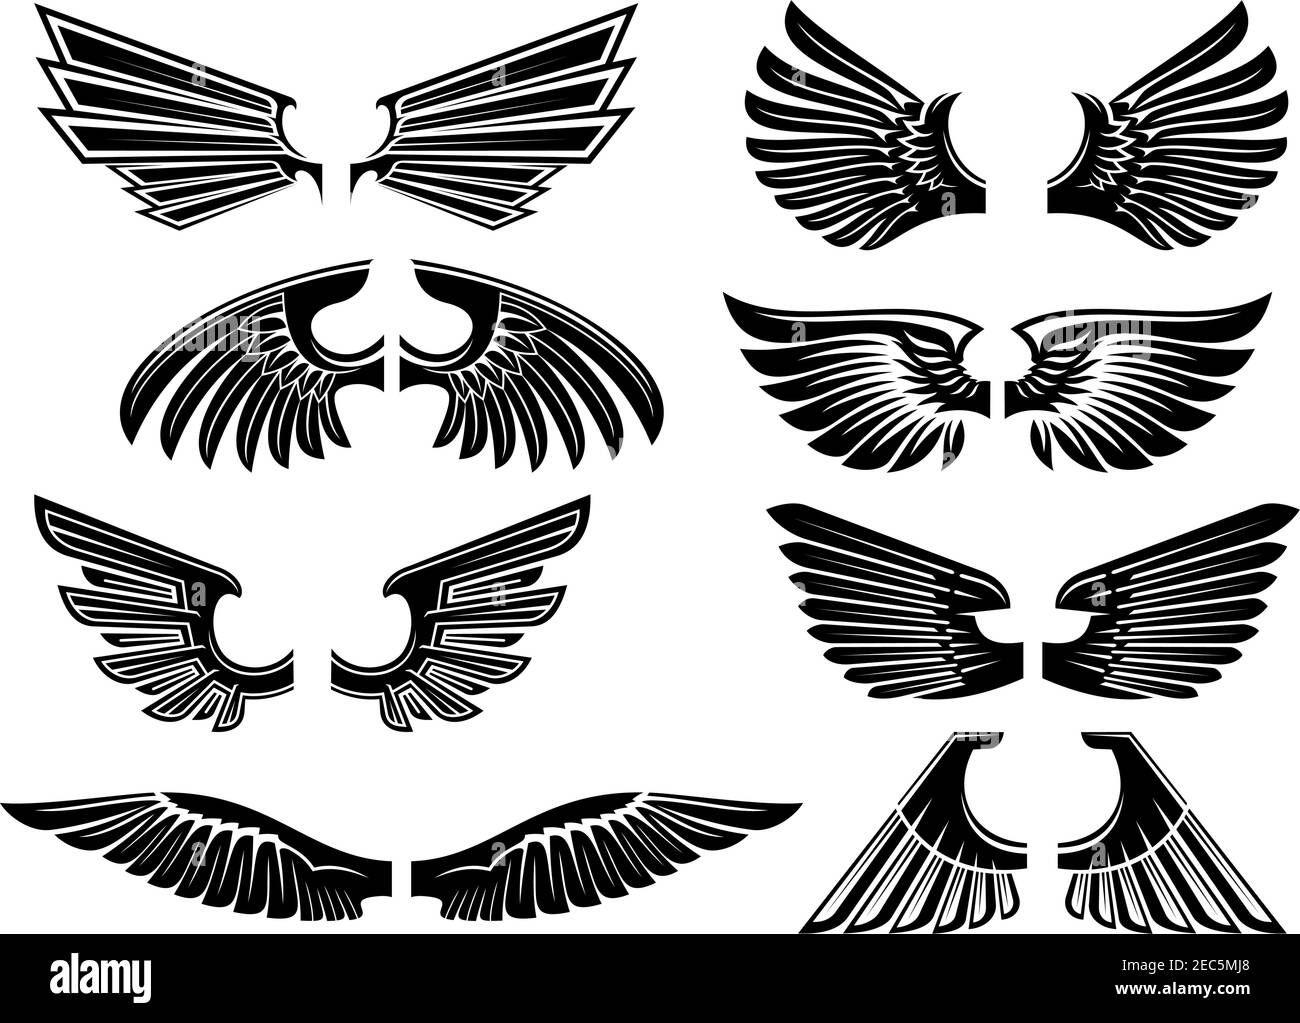 Heraldische Flügel von Engel oder Vogel schwarze Silhouetten von ausgebreiteten Flügeln mit Tribal stilisiertem Gefieder und spitzen Federn. Heraldry Thema oder Tattoo-Design Stock Vektor